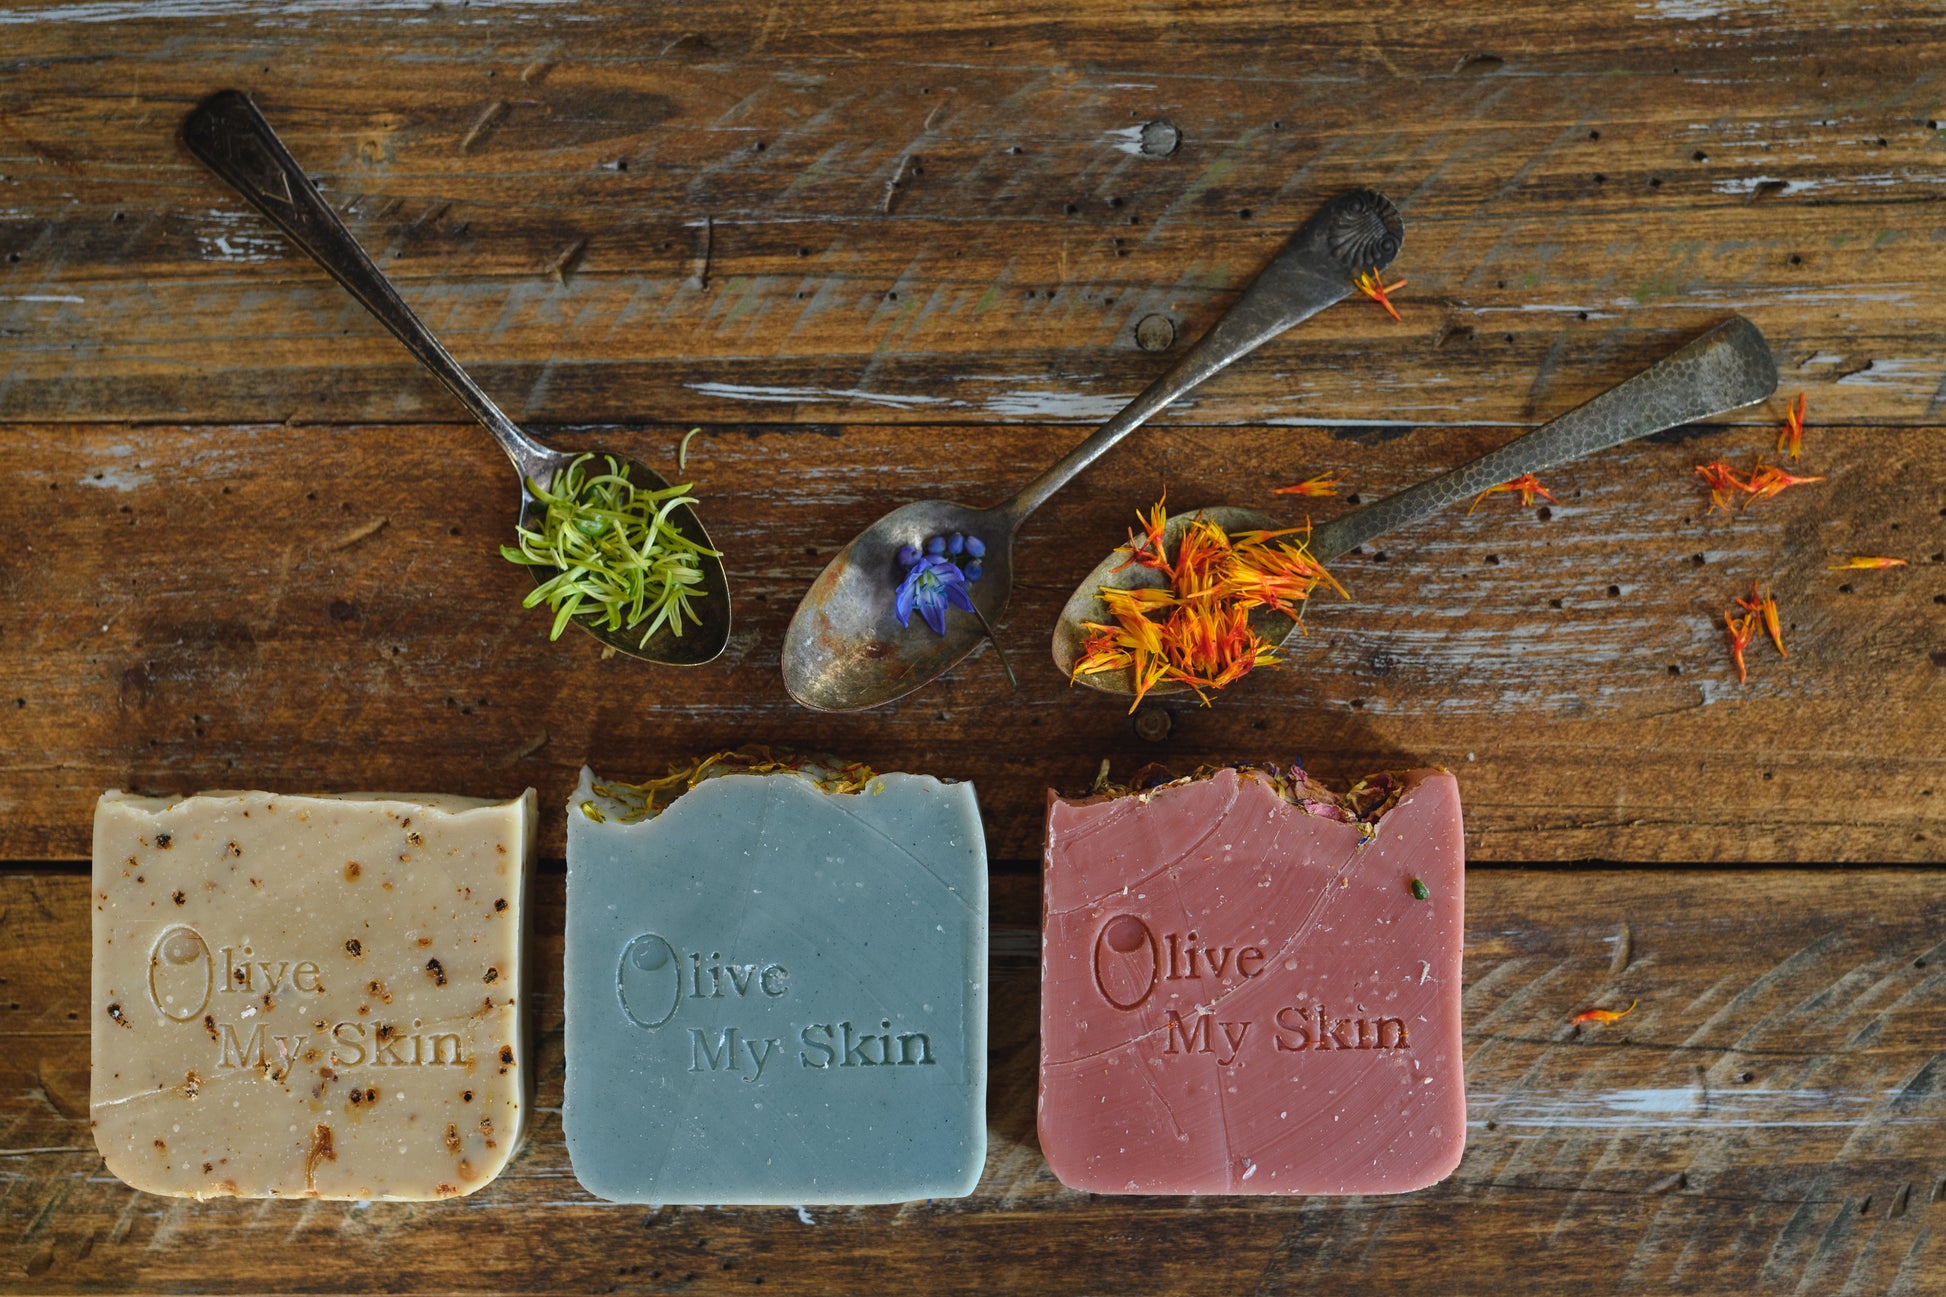 DIY Olive Oil Soap Making Kit, Olive Oil Soap, Make your own natural soap  at home kit!